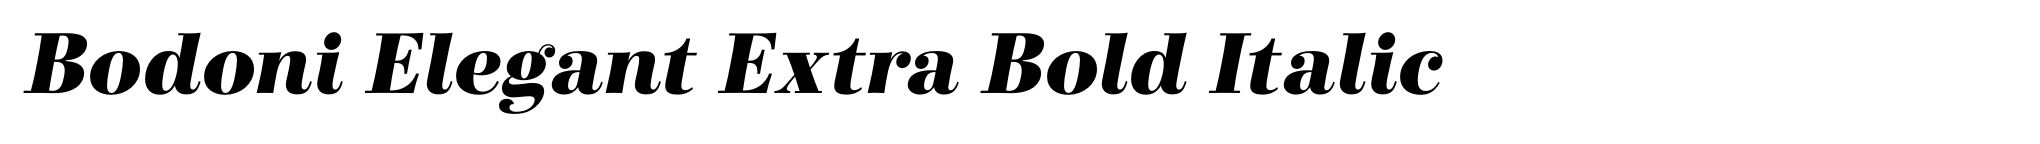 Bodoni Elegant Extra Bold Italic image